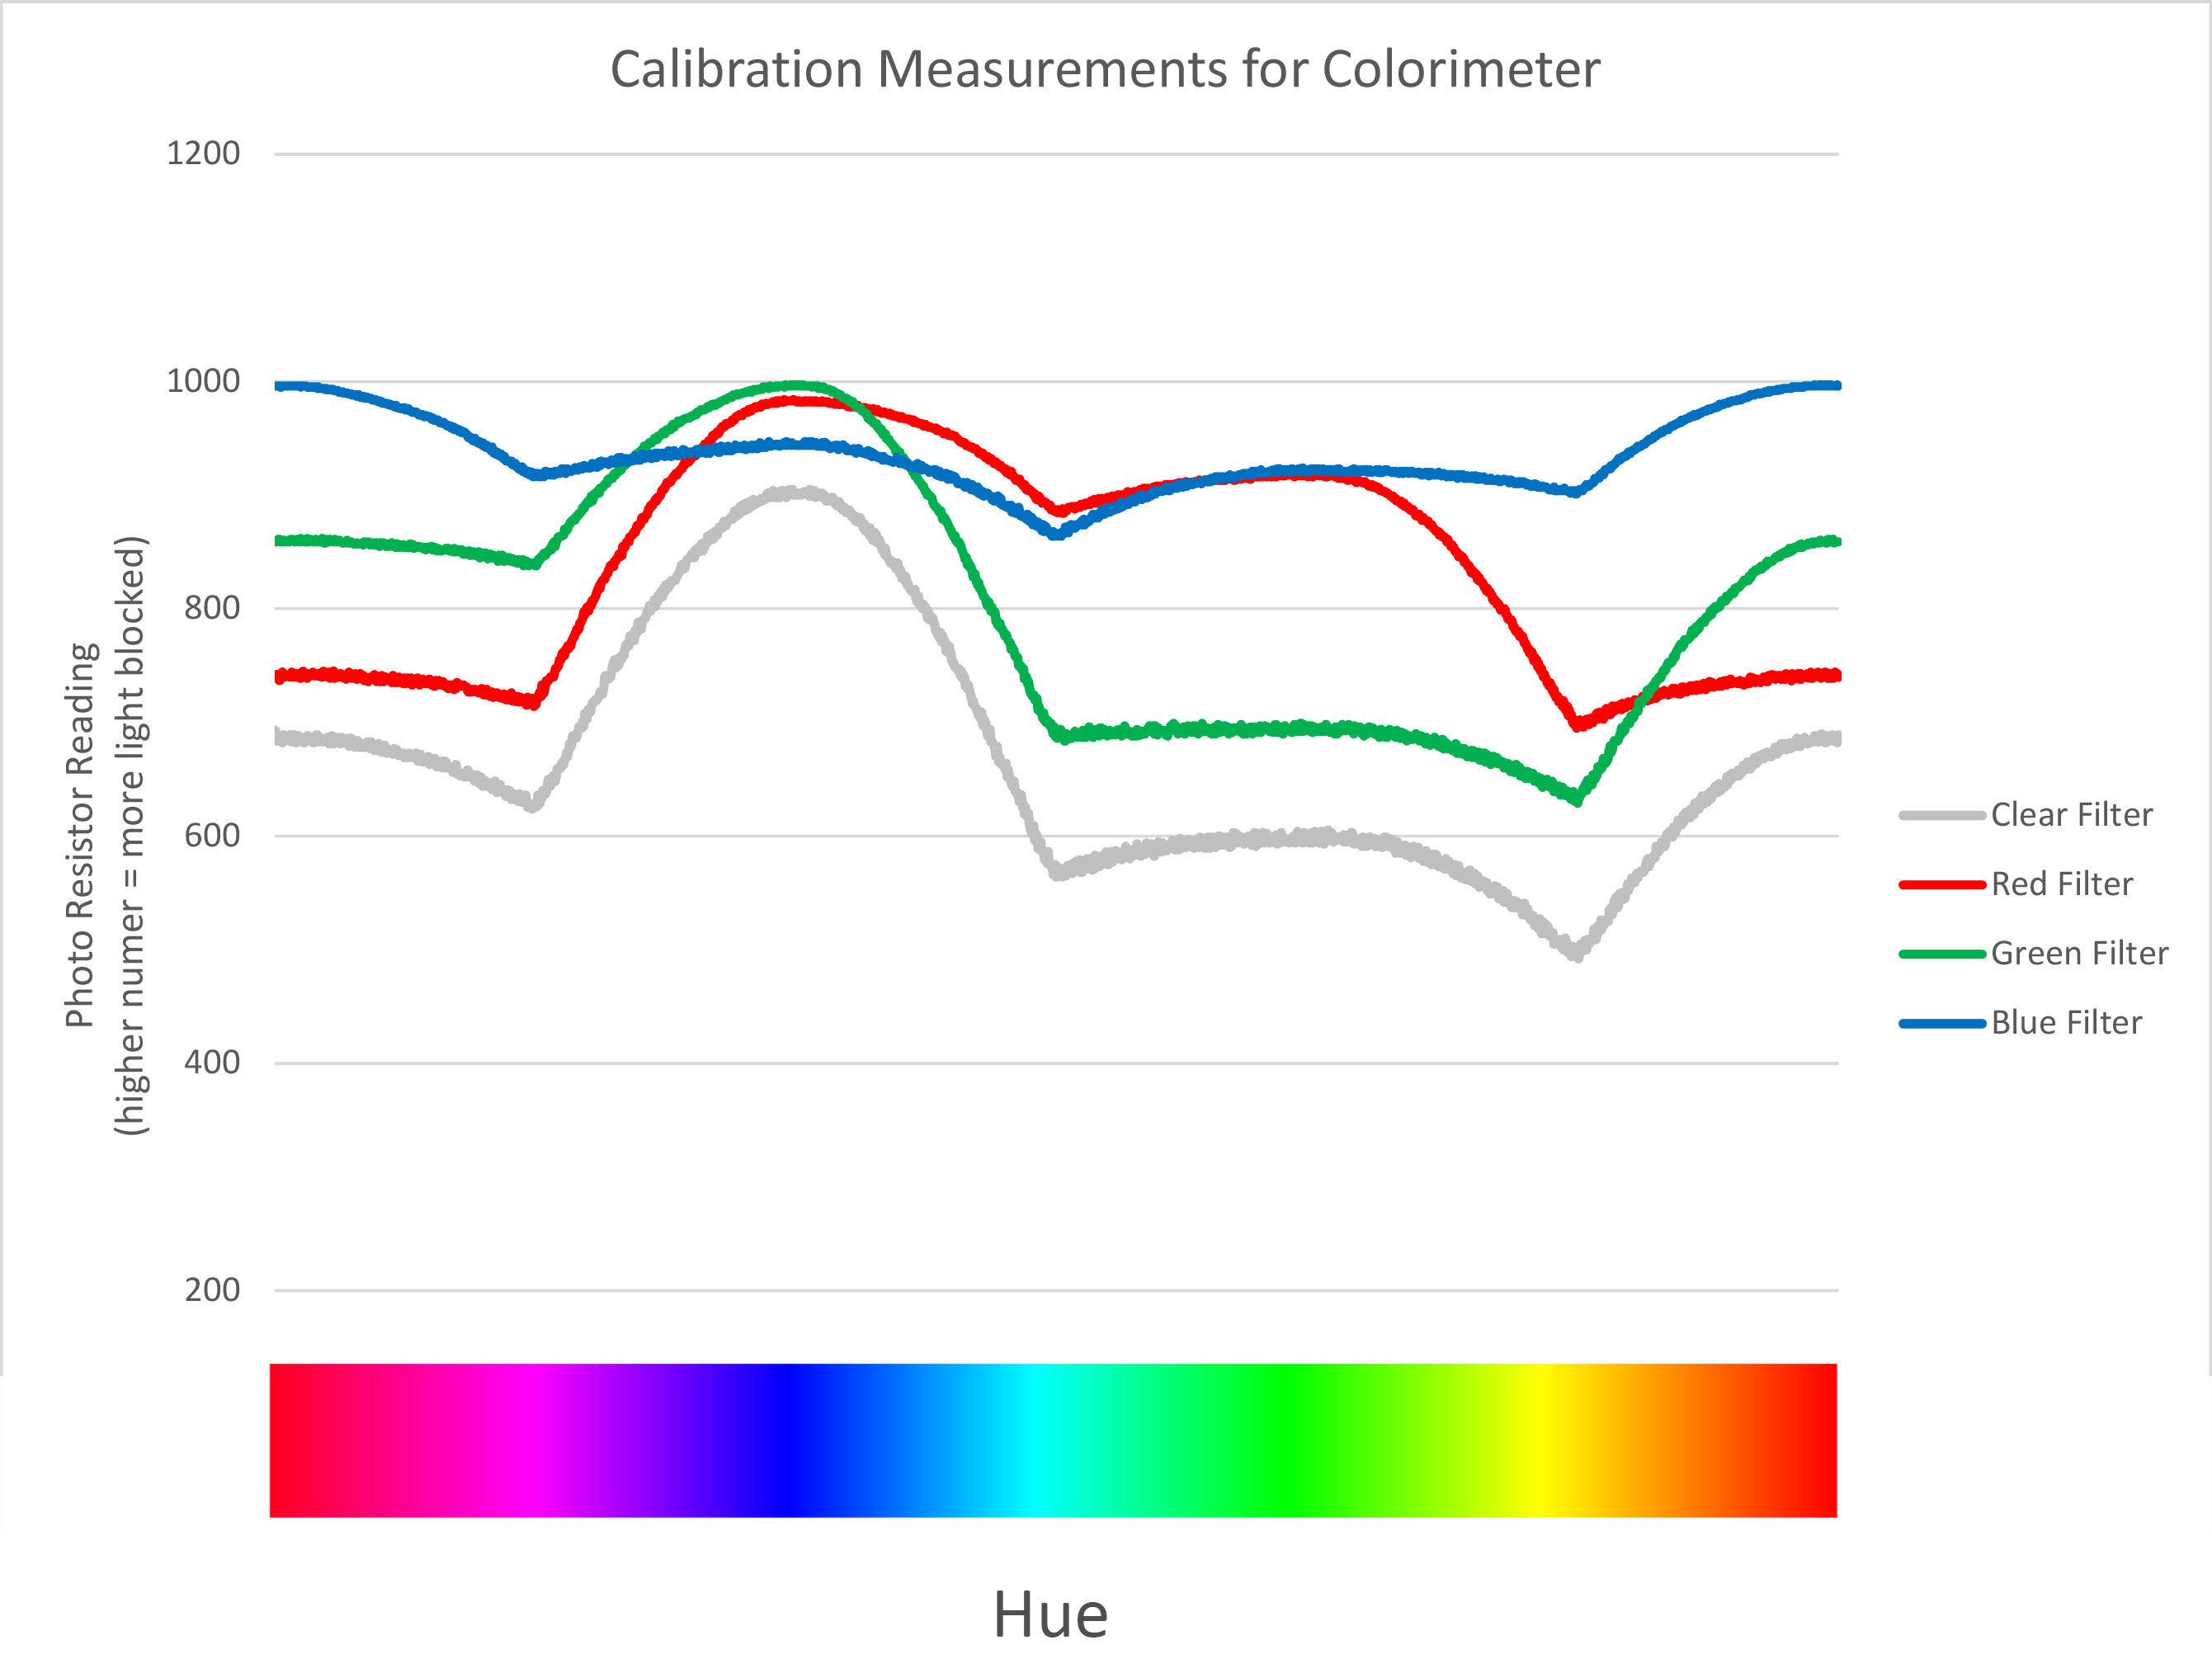 Graph of Color Calibration Measurements